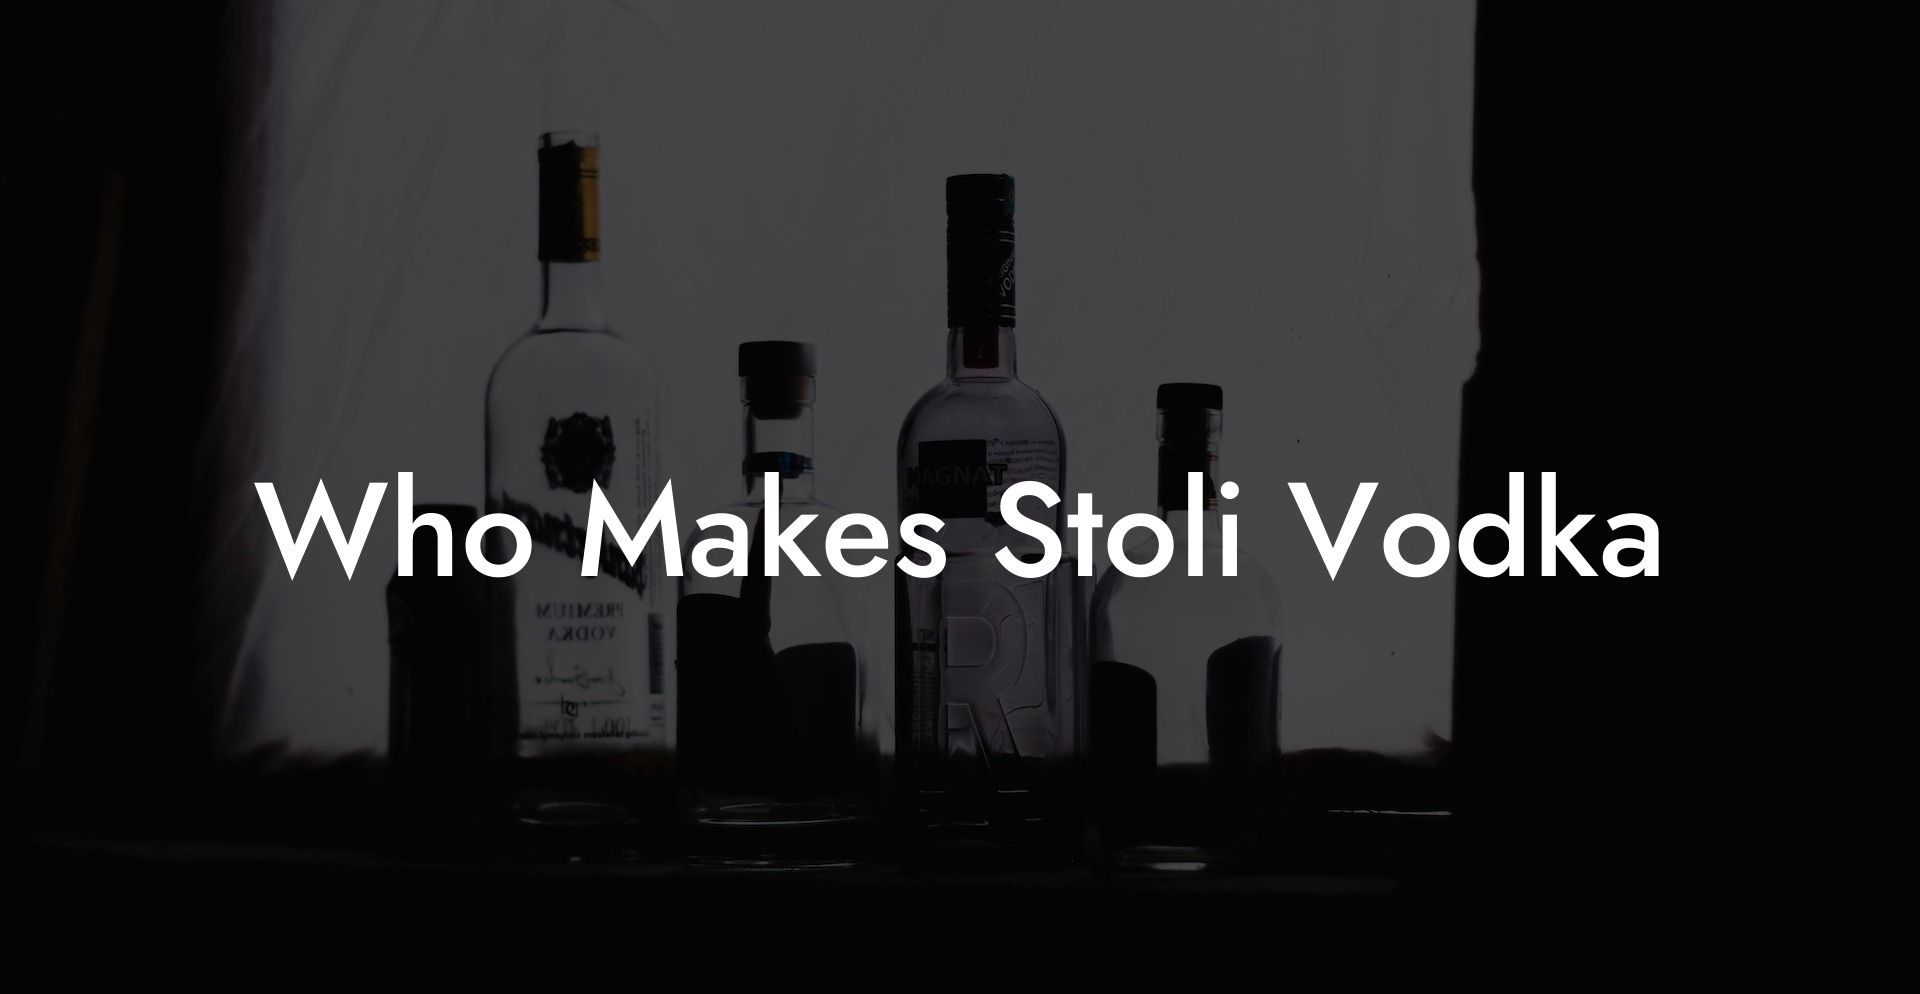 Who Makes Stoli Vodka